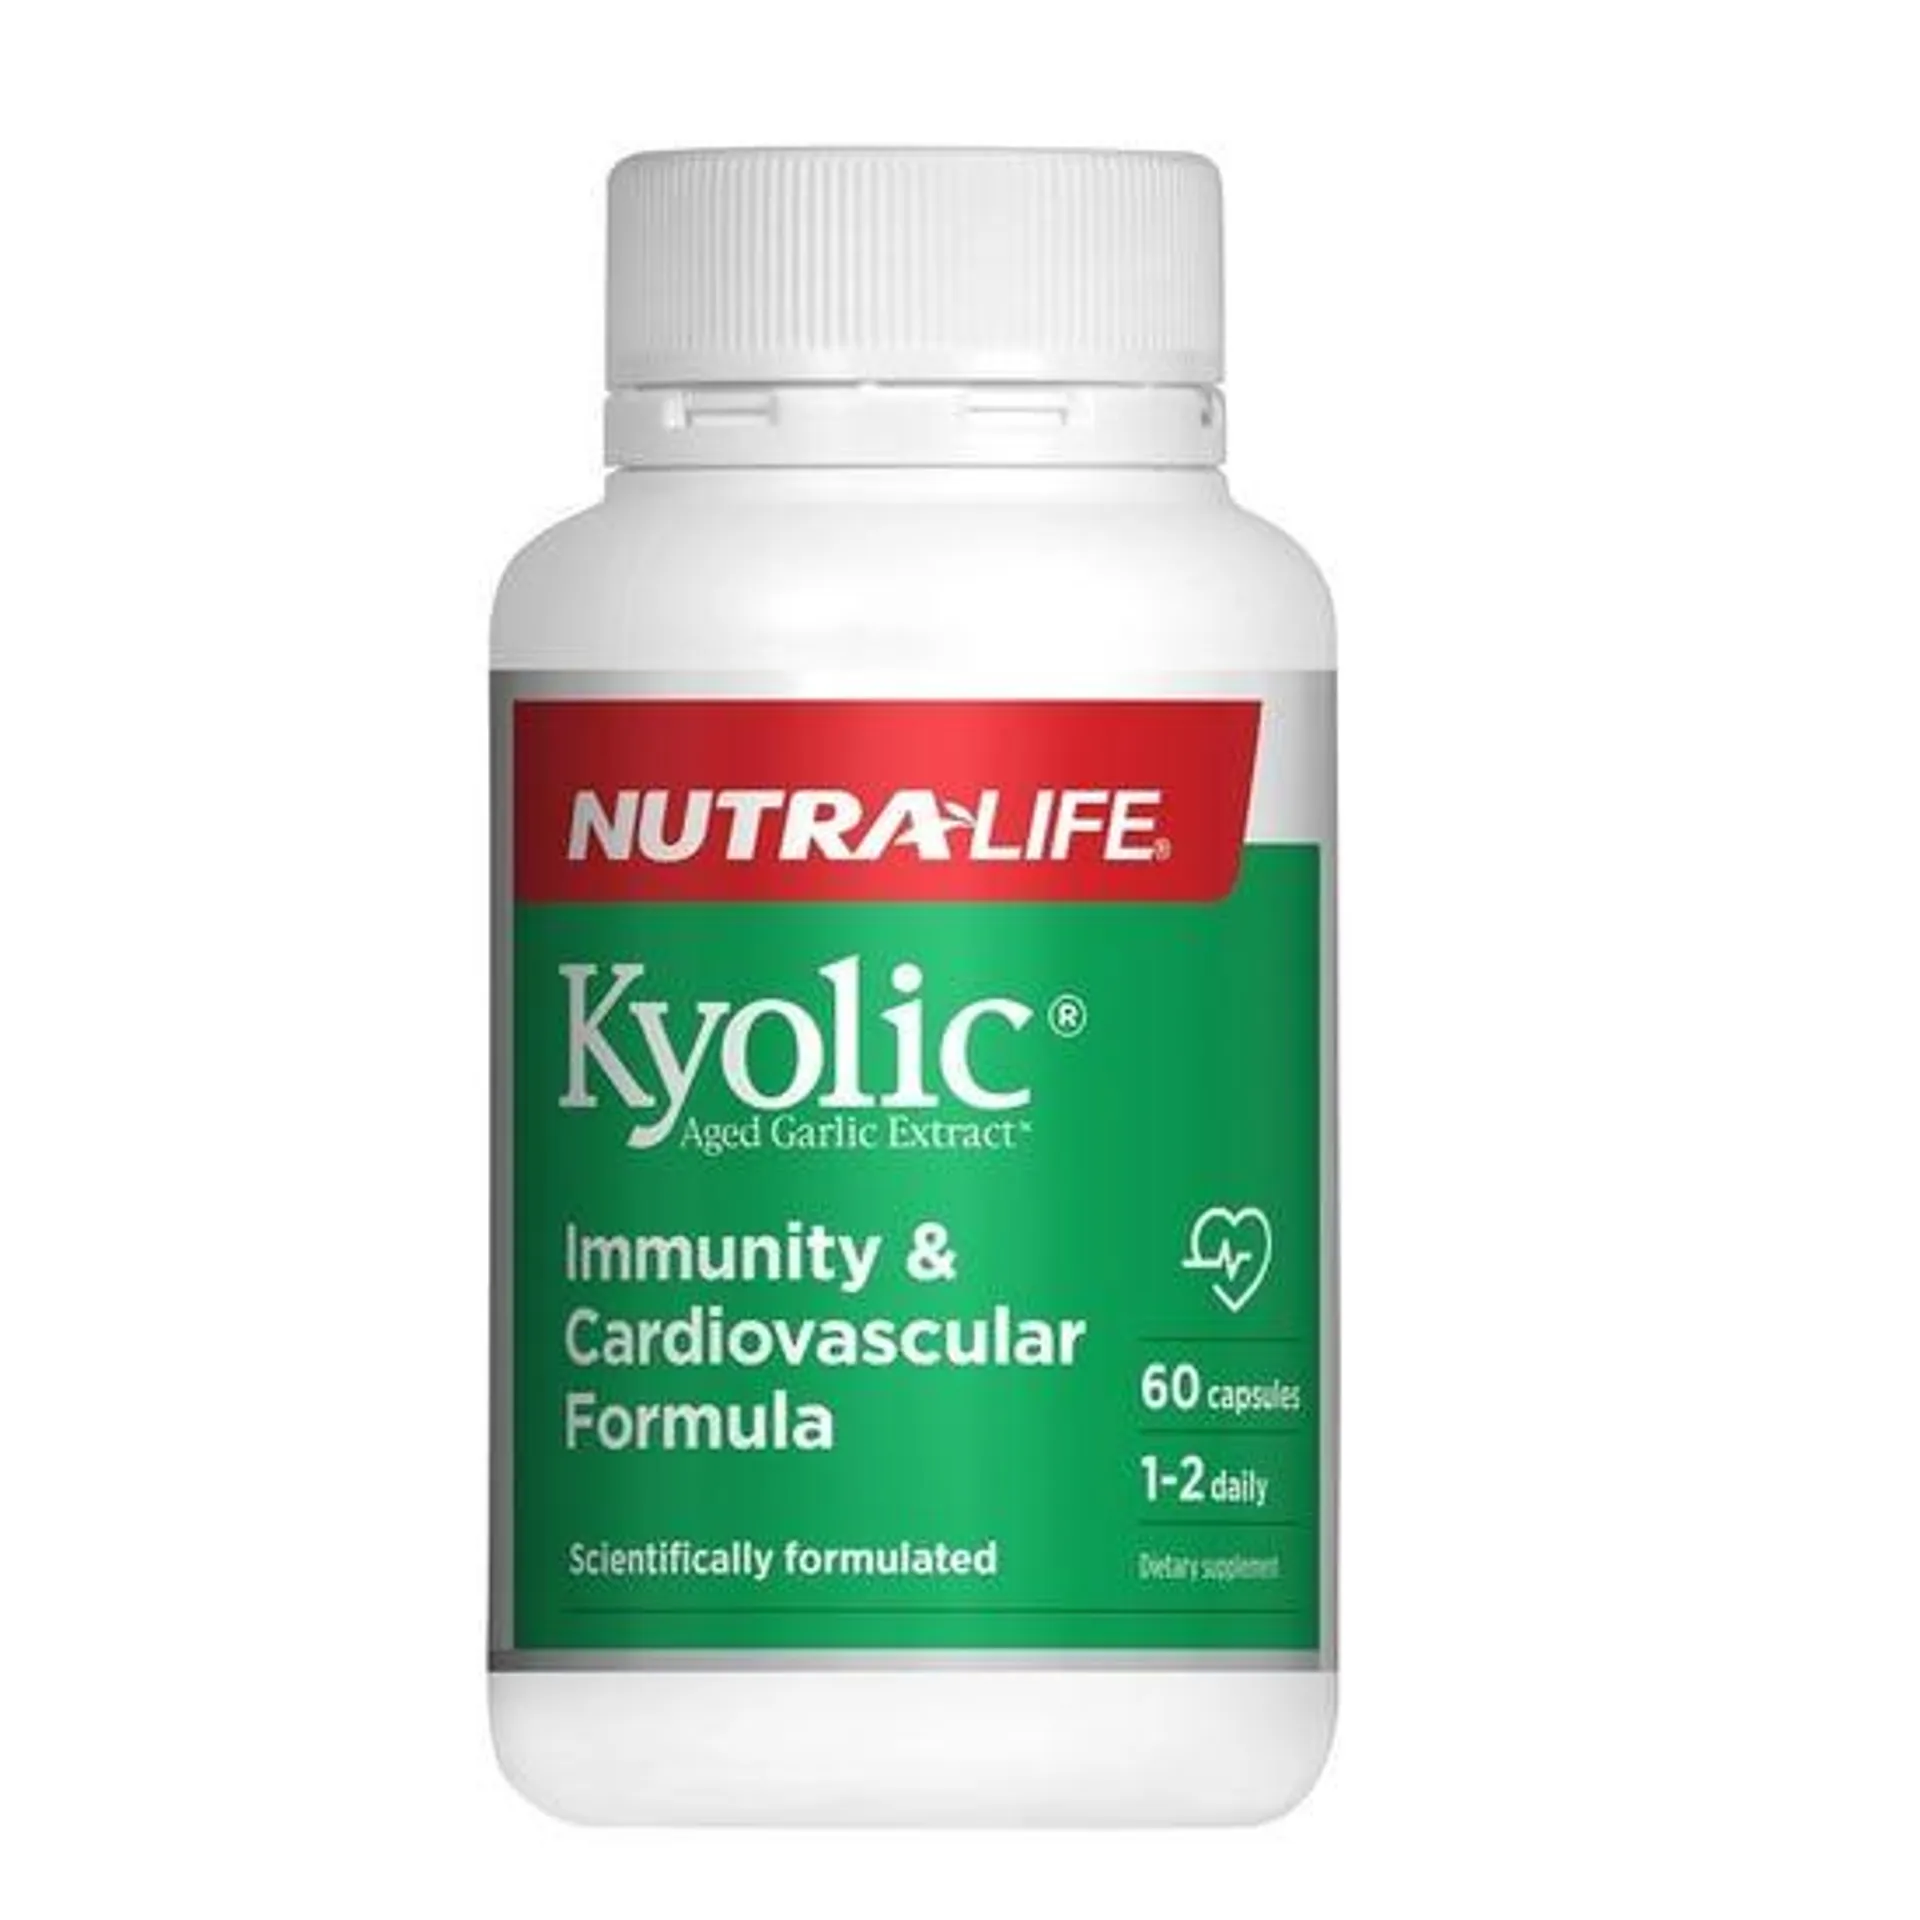 Kyolic Immunity & Cardiovascular Formula